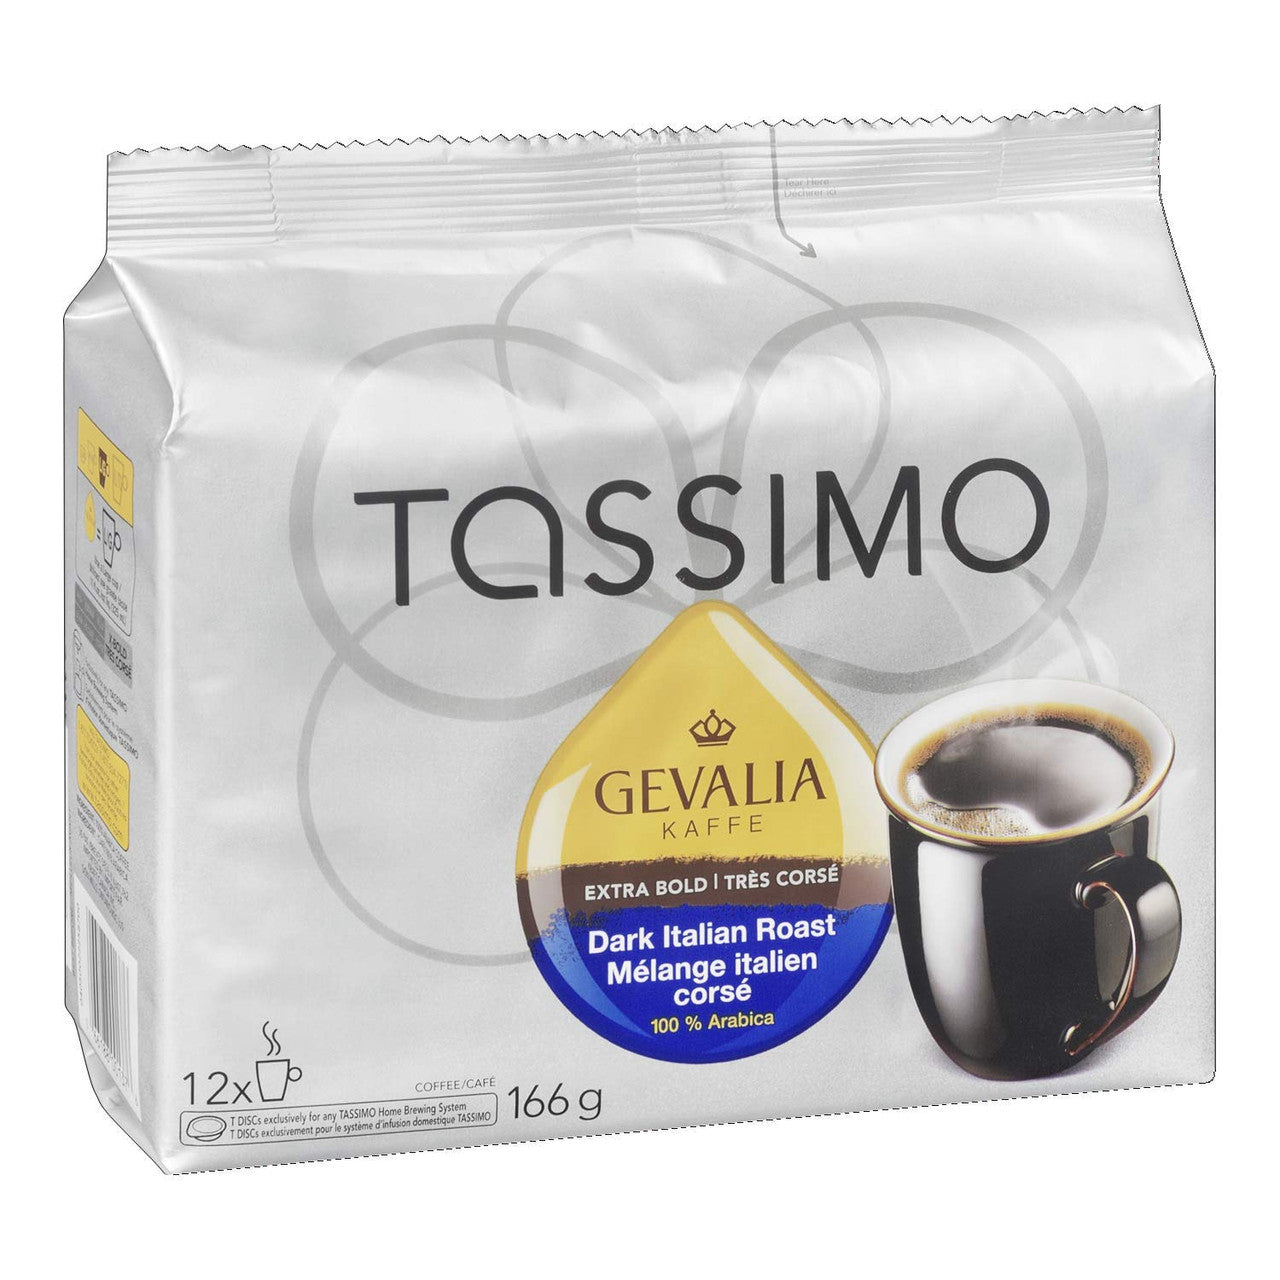 Tassimo Gevalia Dark Italian Roast Coffee, 12 Single Serve T-Discs, {Canadian}